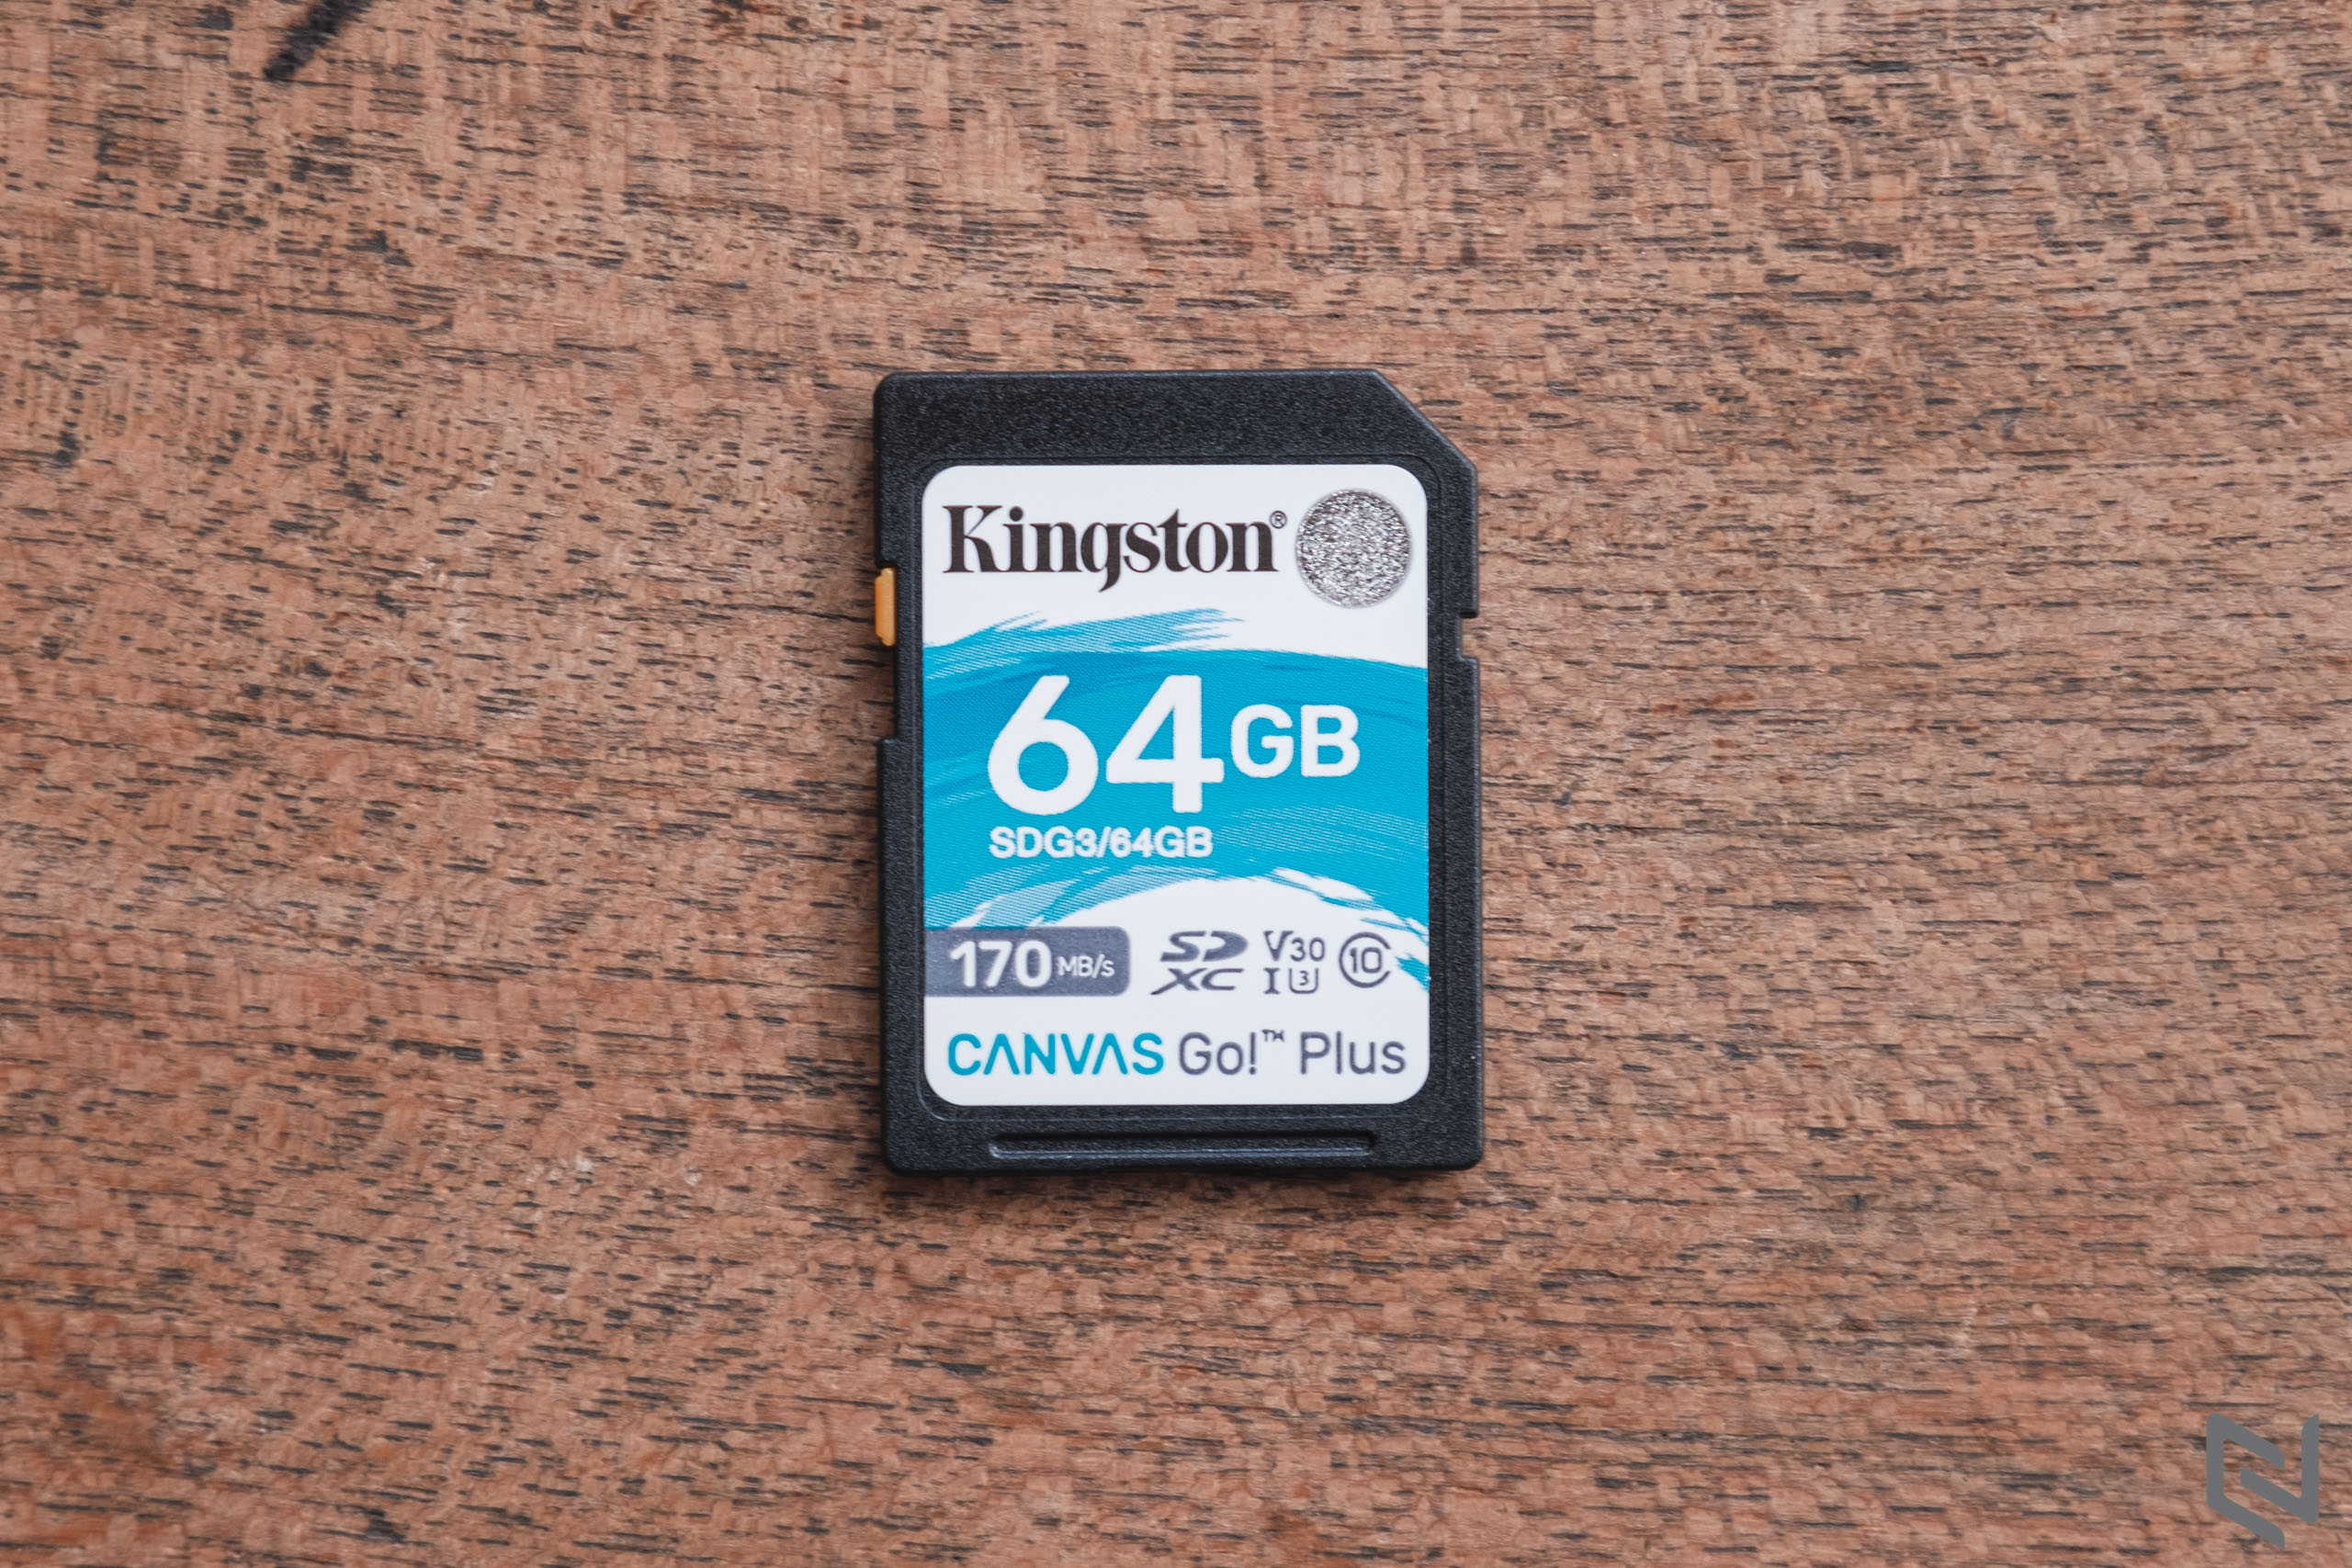 Trên tay thẻ nhớ SD Kingston Canvas Go! Plus 64GB: Chuẩn UHS-I U3 Class 10, tốc độ 170MB/s, quay được 4K UHD